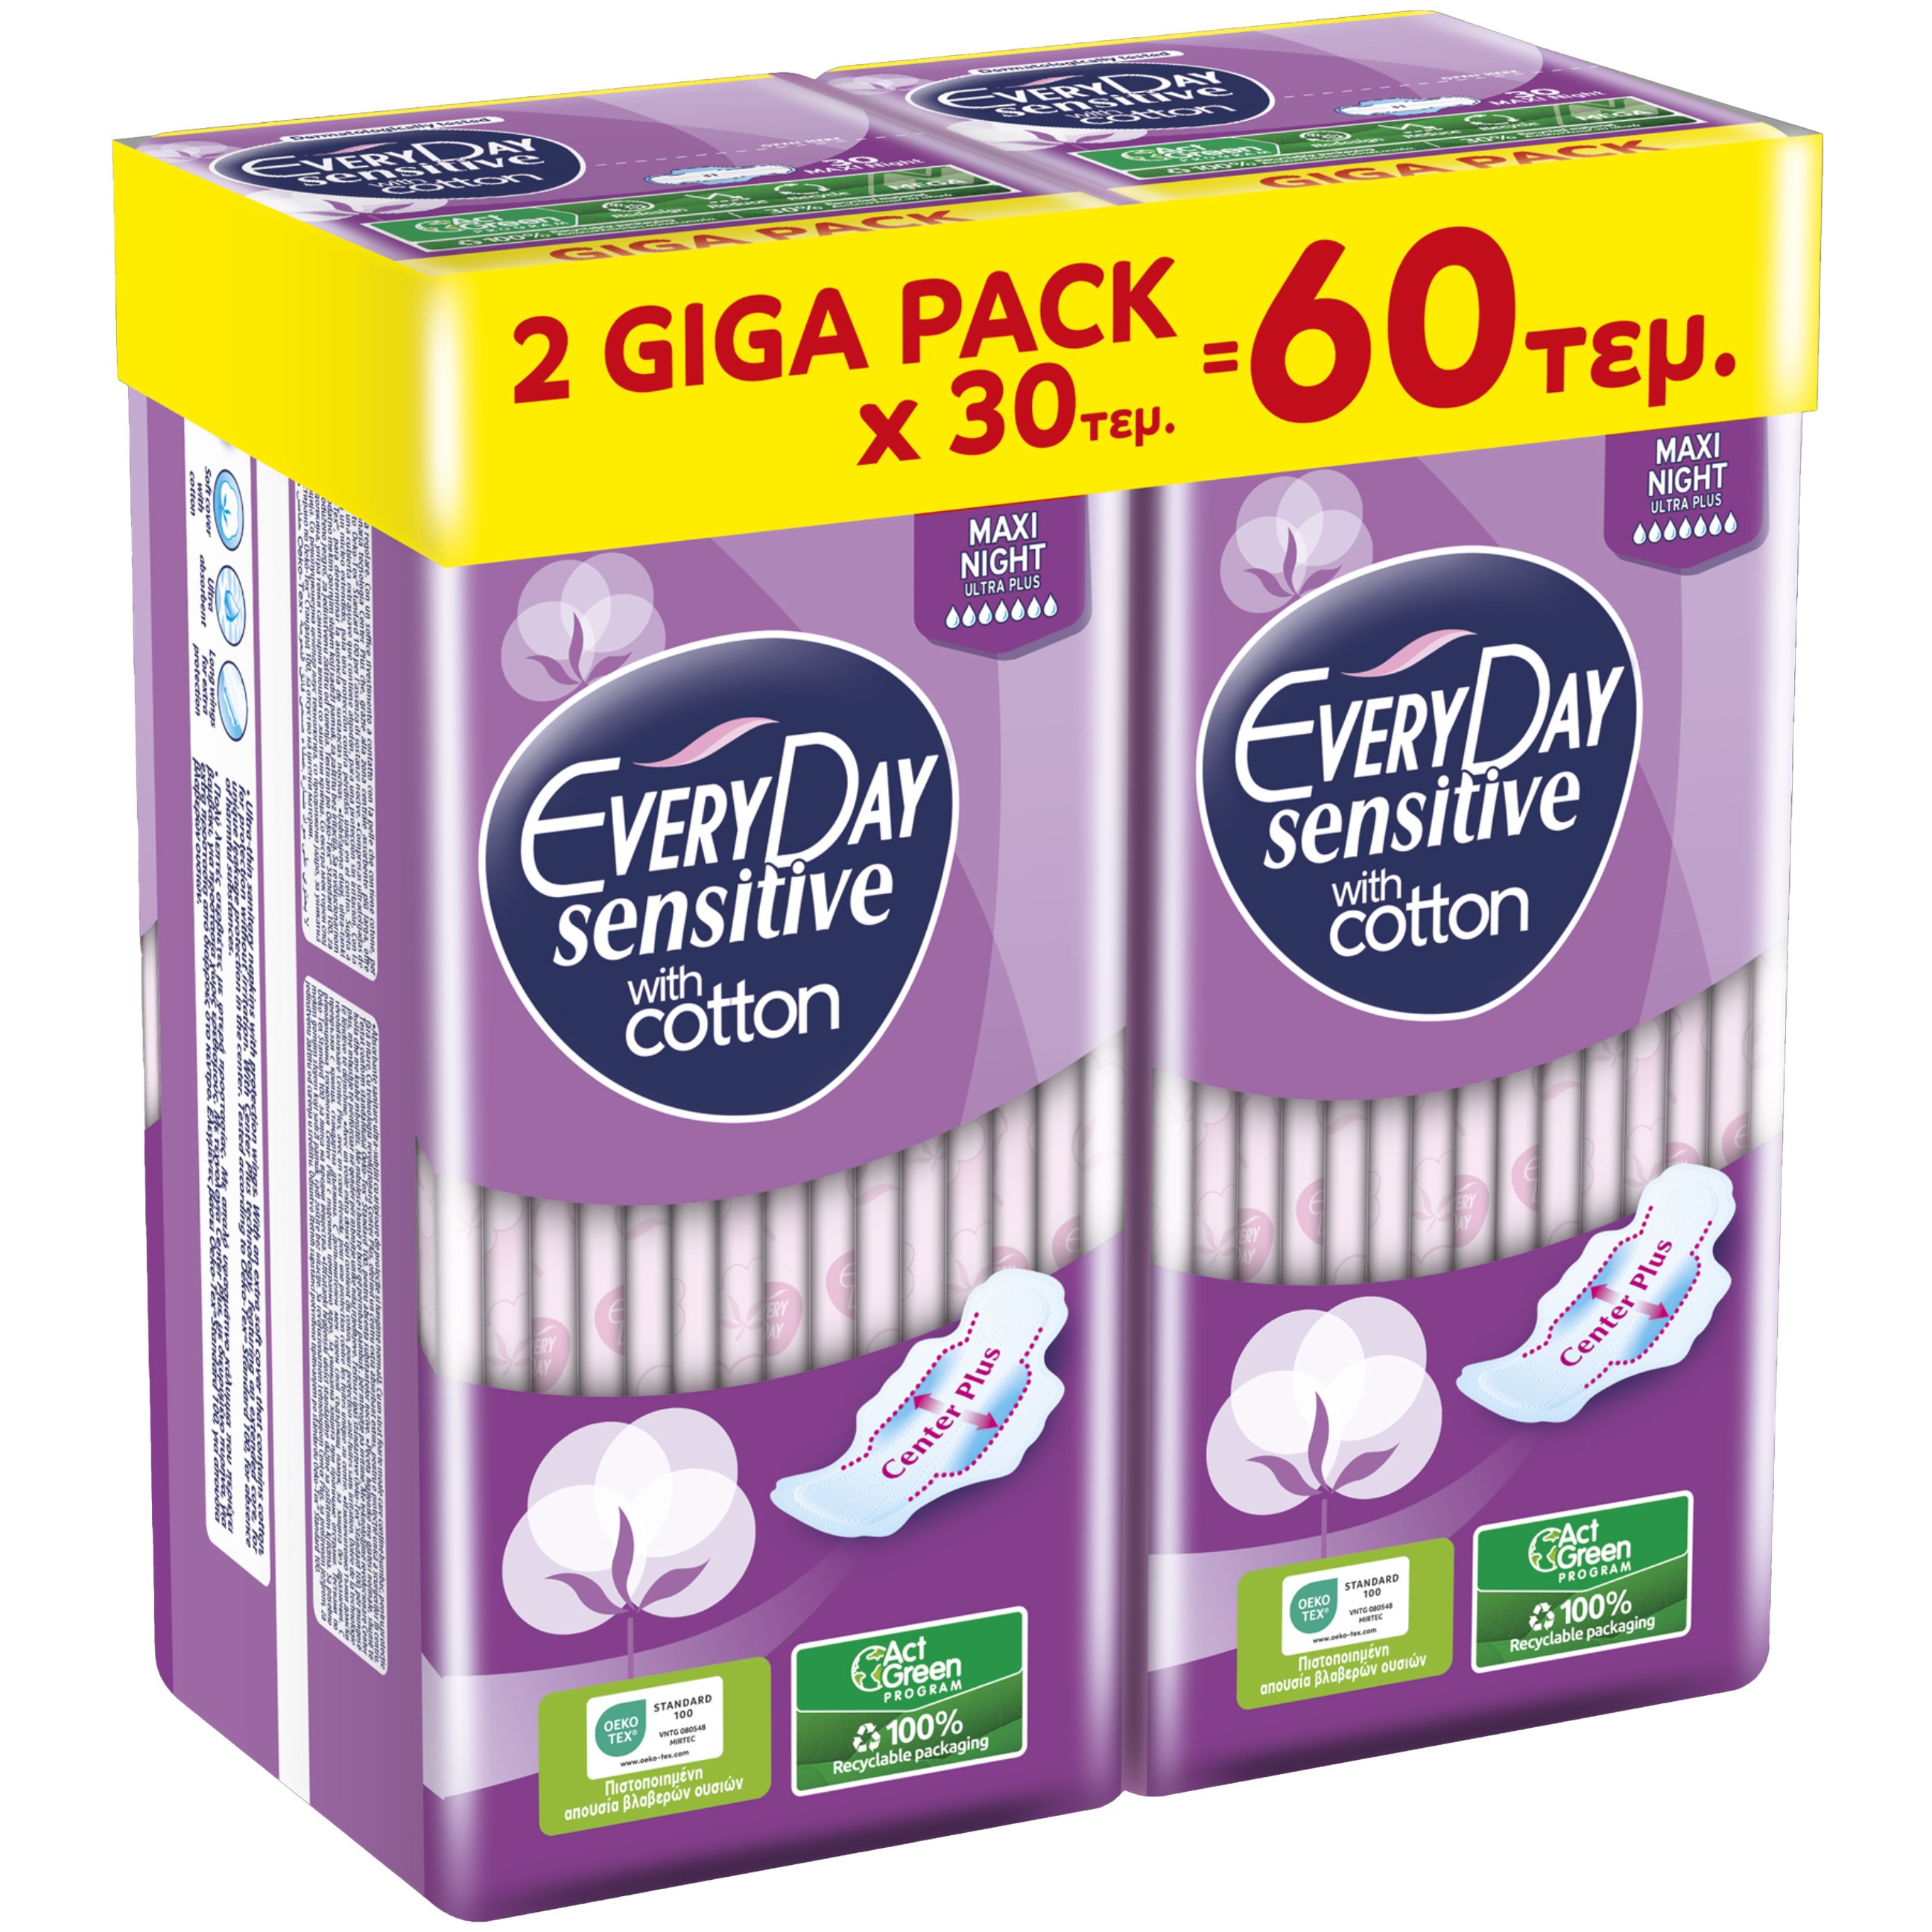 Σετ Every Day Sensitive with Cotton Maxi Night Ultra Plus Giga Pack Λεπτές Σερβιέτες Μεγάλου Μήκους με Φτερά Κατάλληλες για τη Νύχτα ή για Περιπτώσεις Μεγάλης Ροής 60 Τεμάχια (2×30 Τεμάχια)